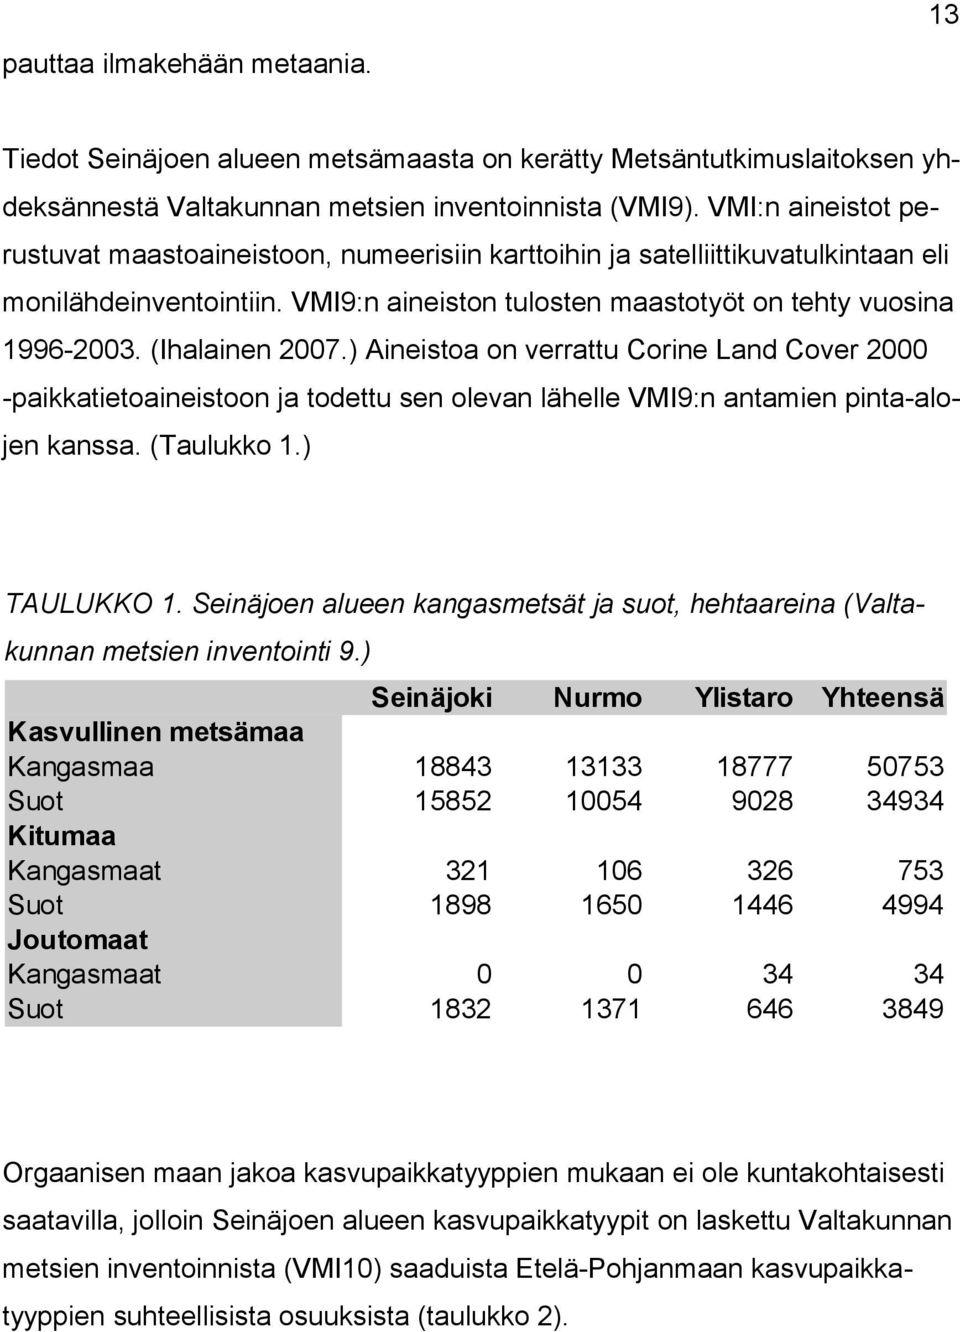 (Ihalainen 2007.) Aineistoa on verrattu Corine Land Cover 2000 -paikkatietoaineistoon ja todettu sen olevan lähelle VMI9:n antamien pinta-alojen kanssa. (Taulukko 1.) TAULUKKO 1.